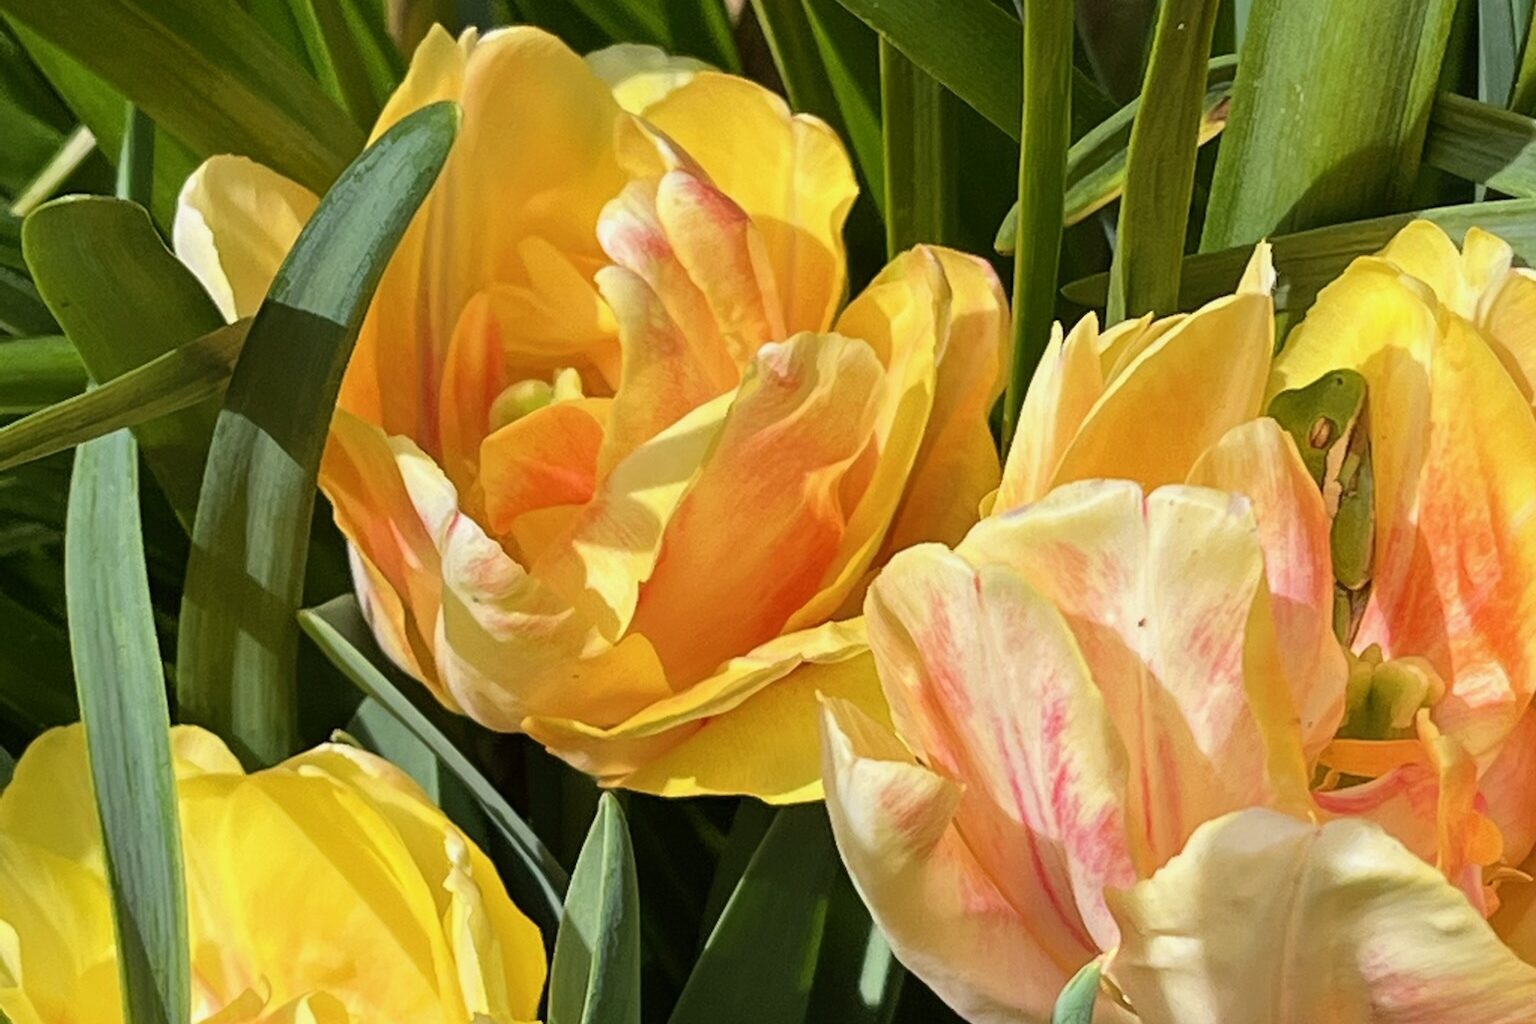 native species tulips